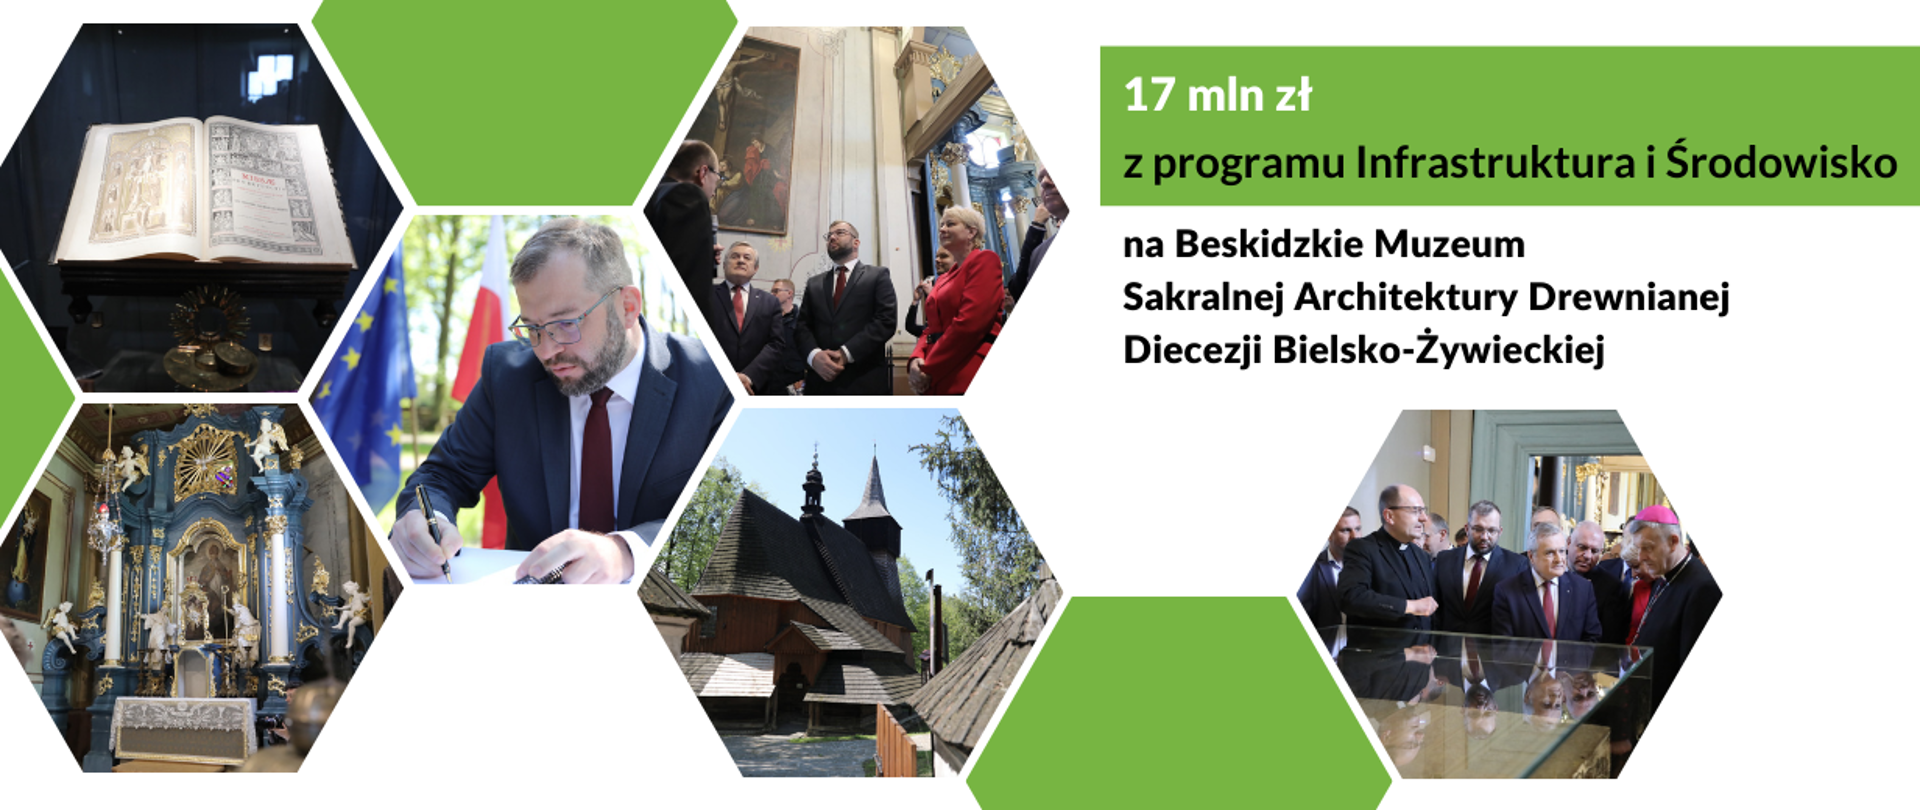 Minister G. Puda uczestniczył w otwarciu Beskidzkiego Muzeum Rozproszone diecezji bielsko-żywieckiej
